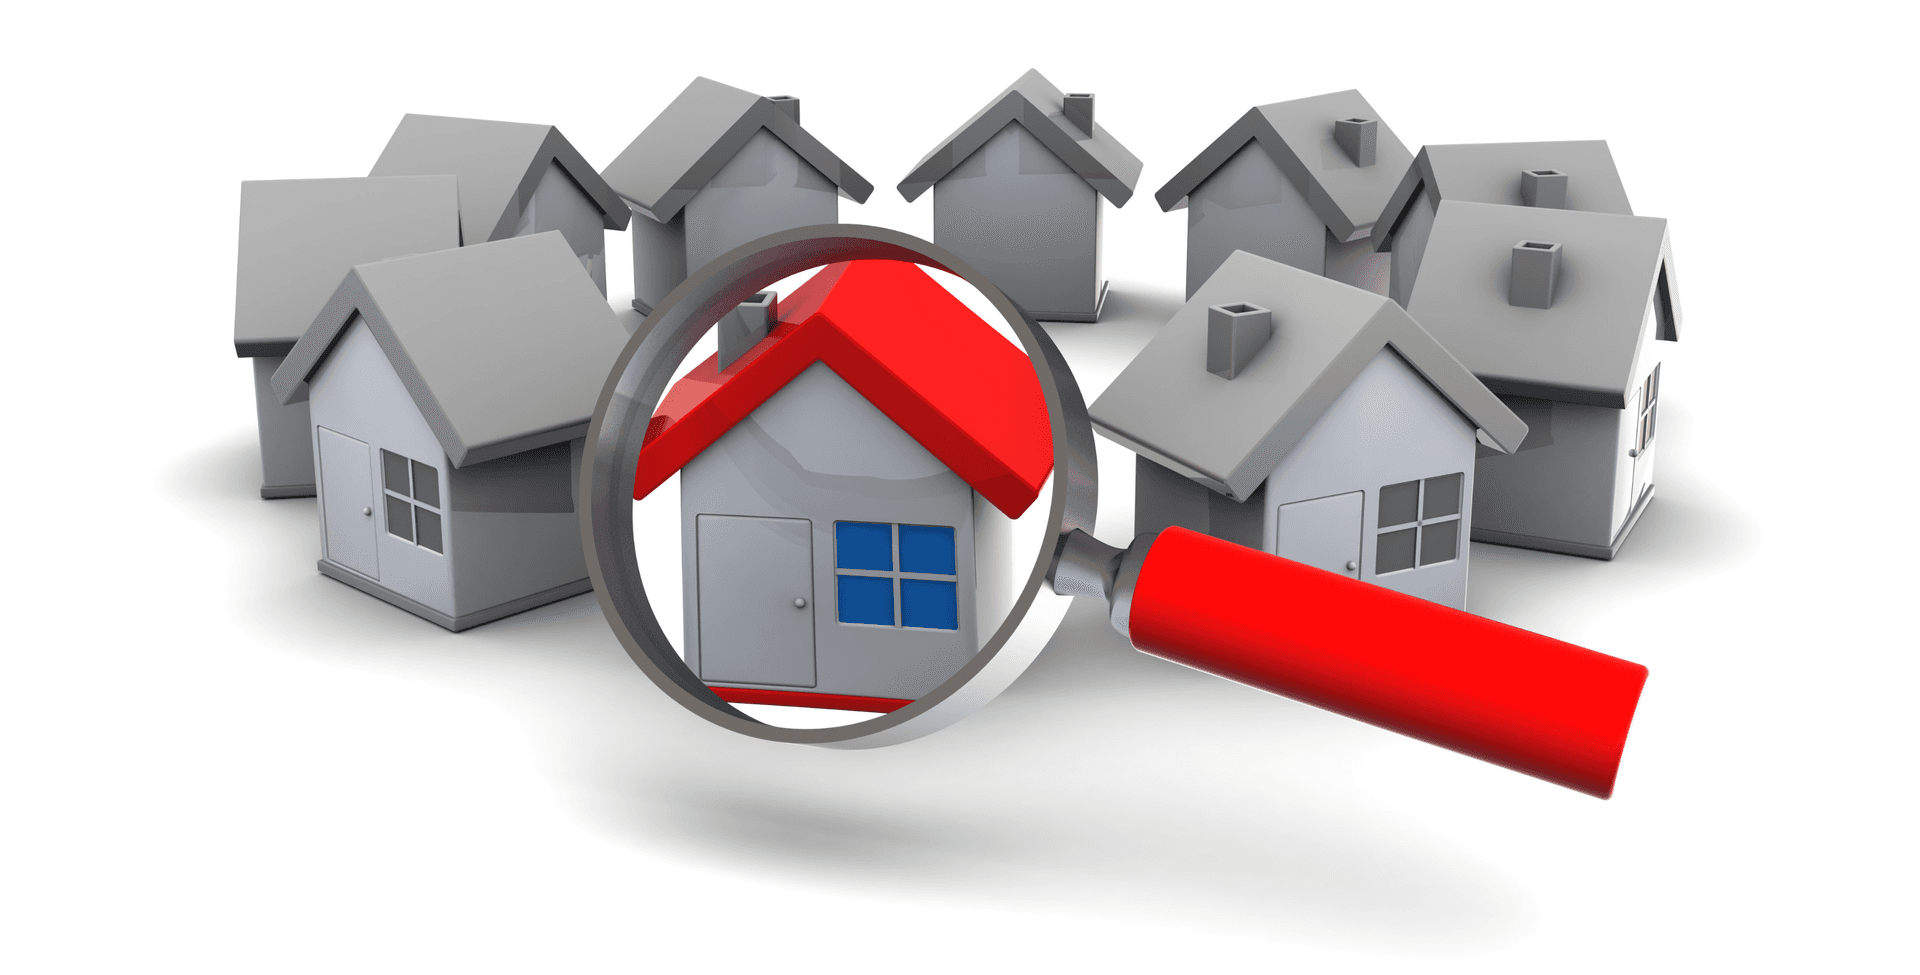 ¿Quieres invertir en bienes raíces? Aprende a identificar y evaluar propiedades como un experto.